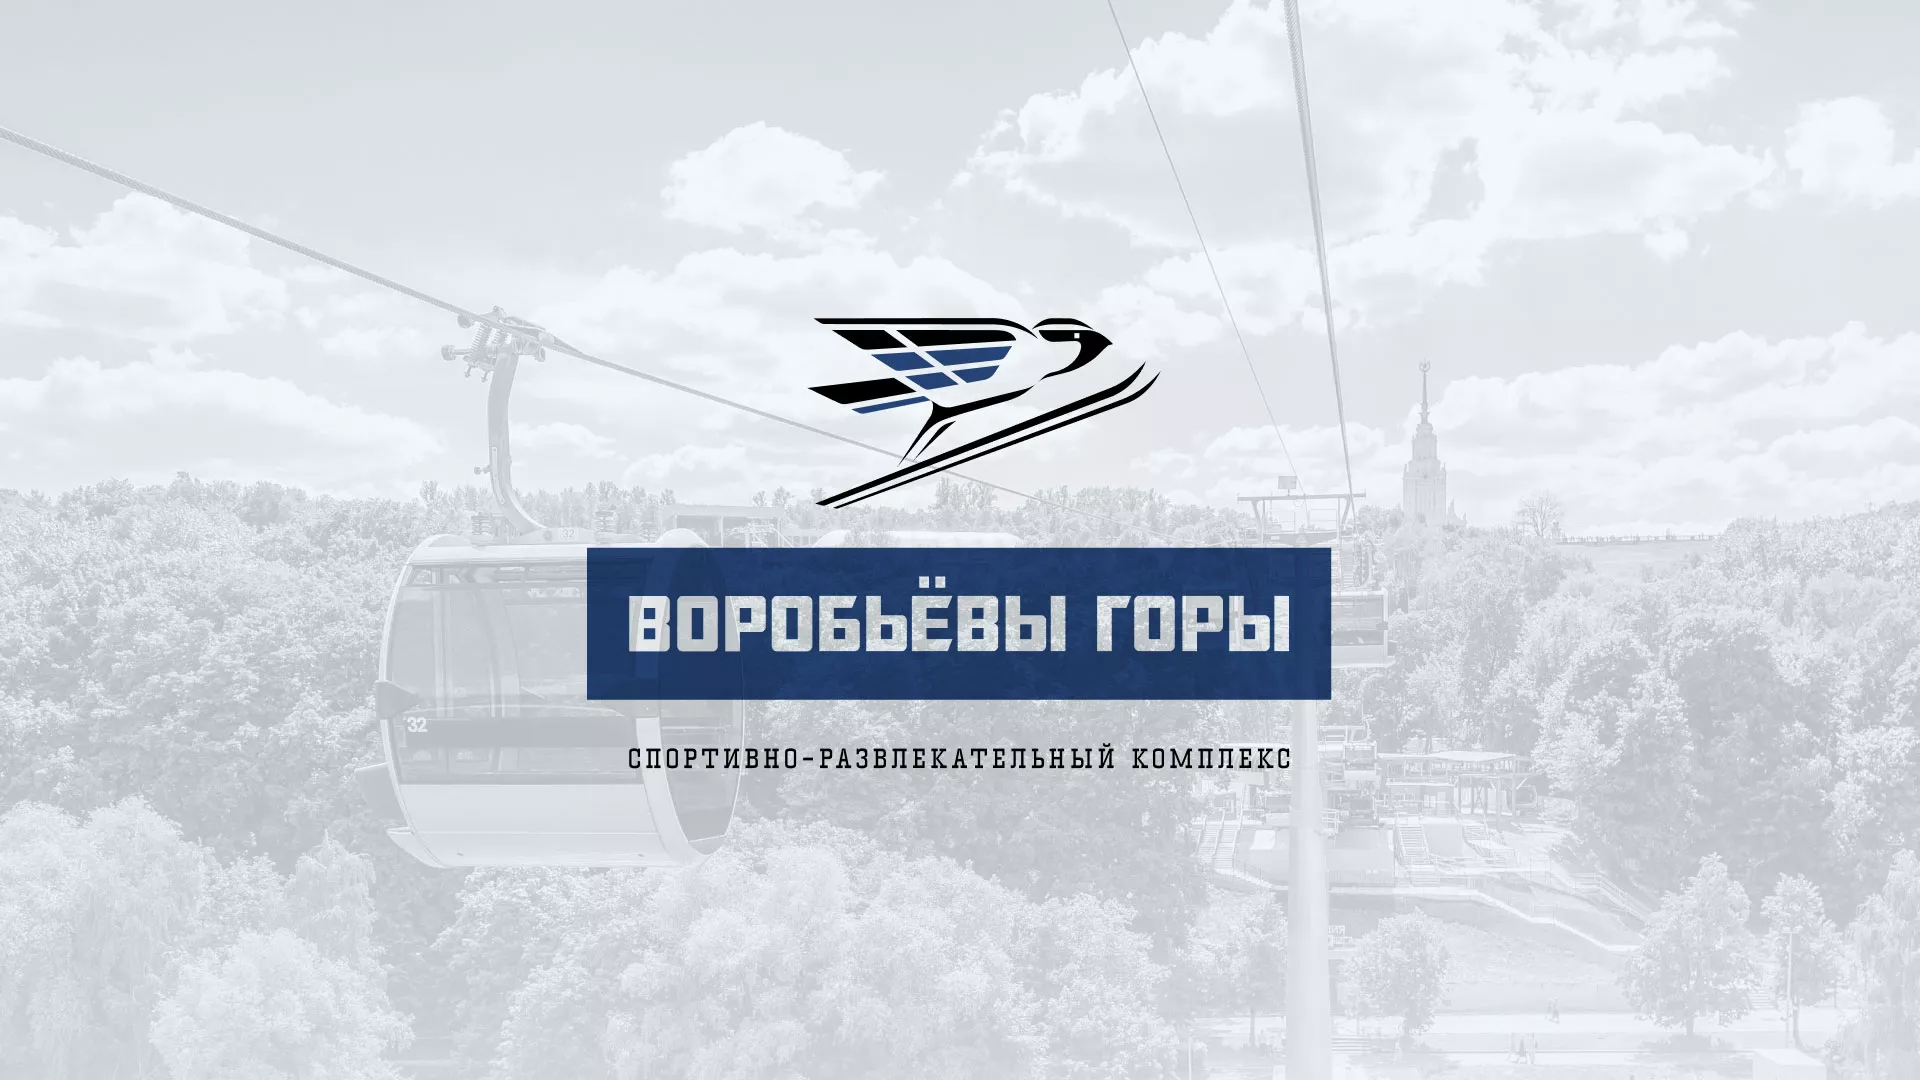 Разработка сайта в Воткинске для спортивно-развлекательного комплекса «Воробьёвы горы»